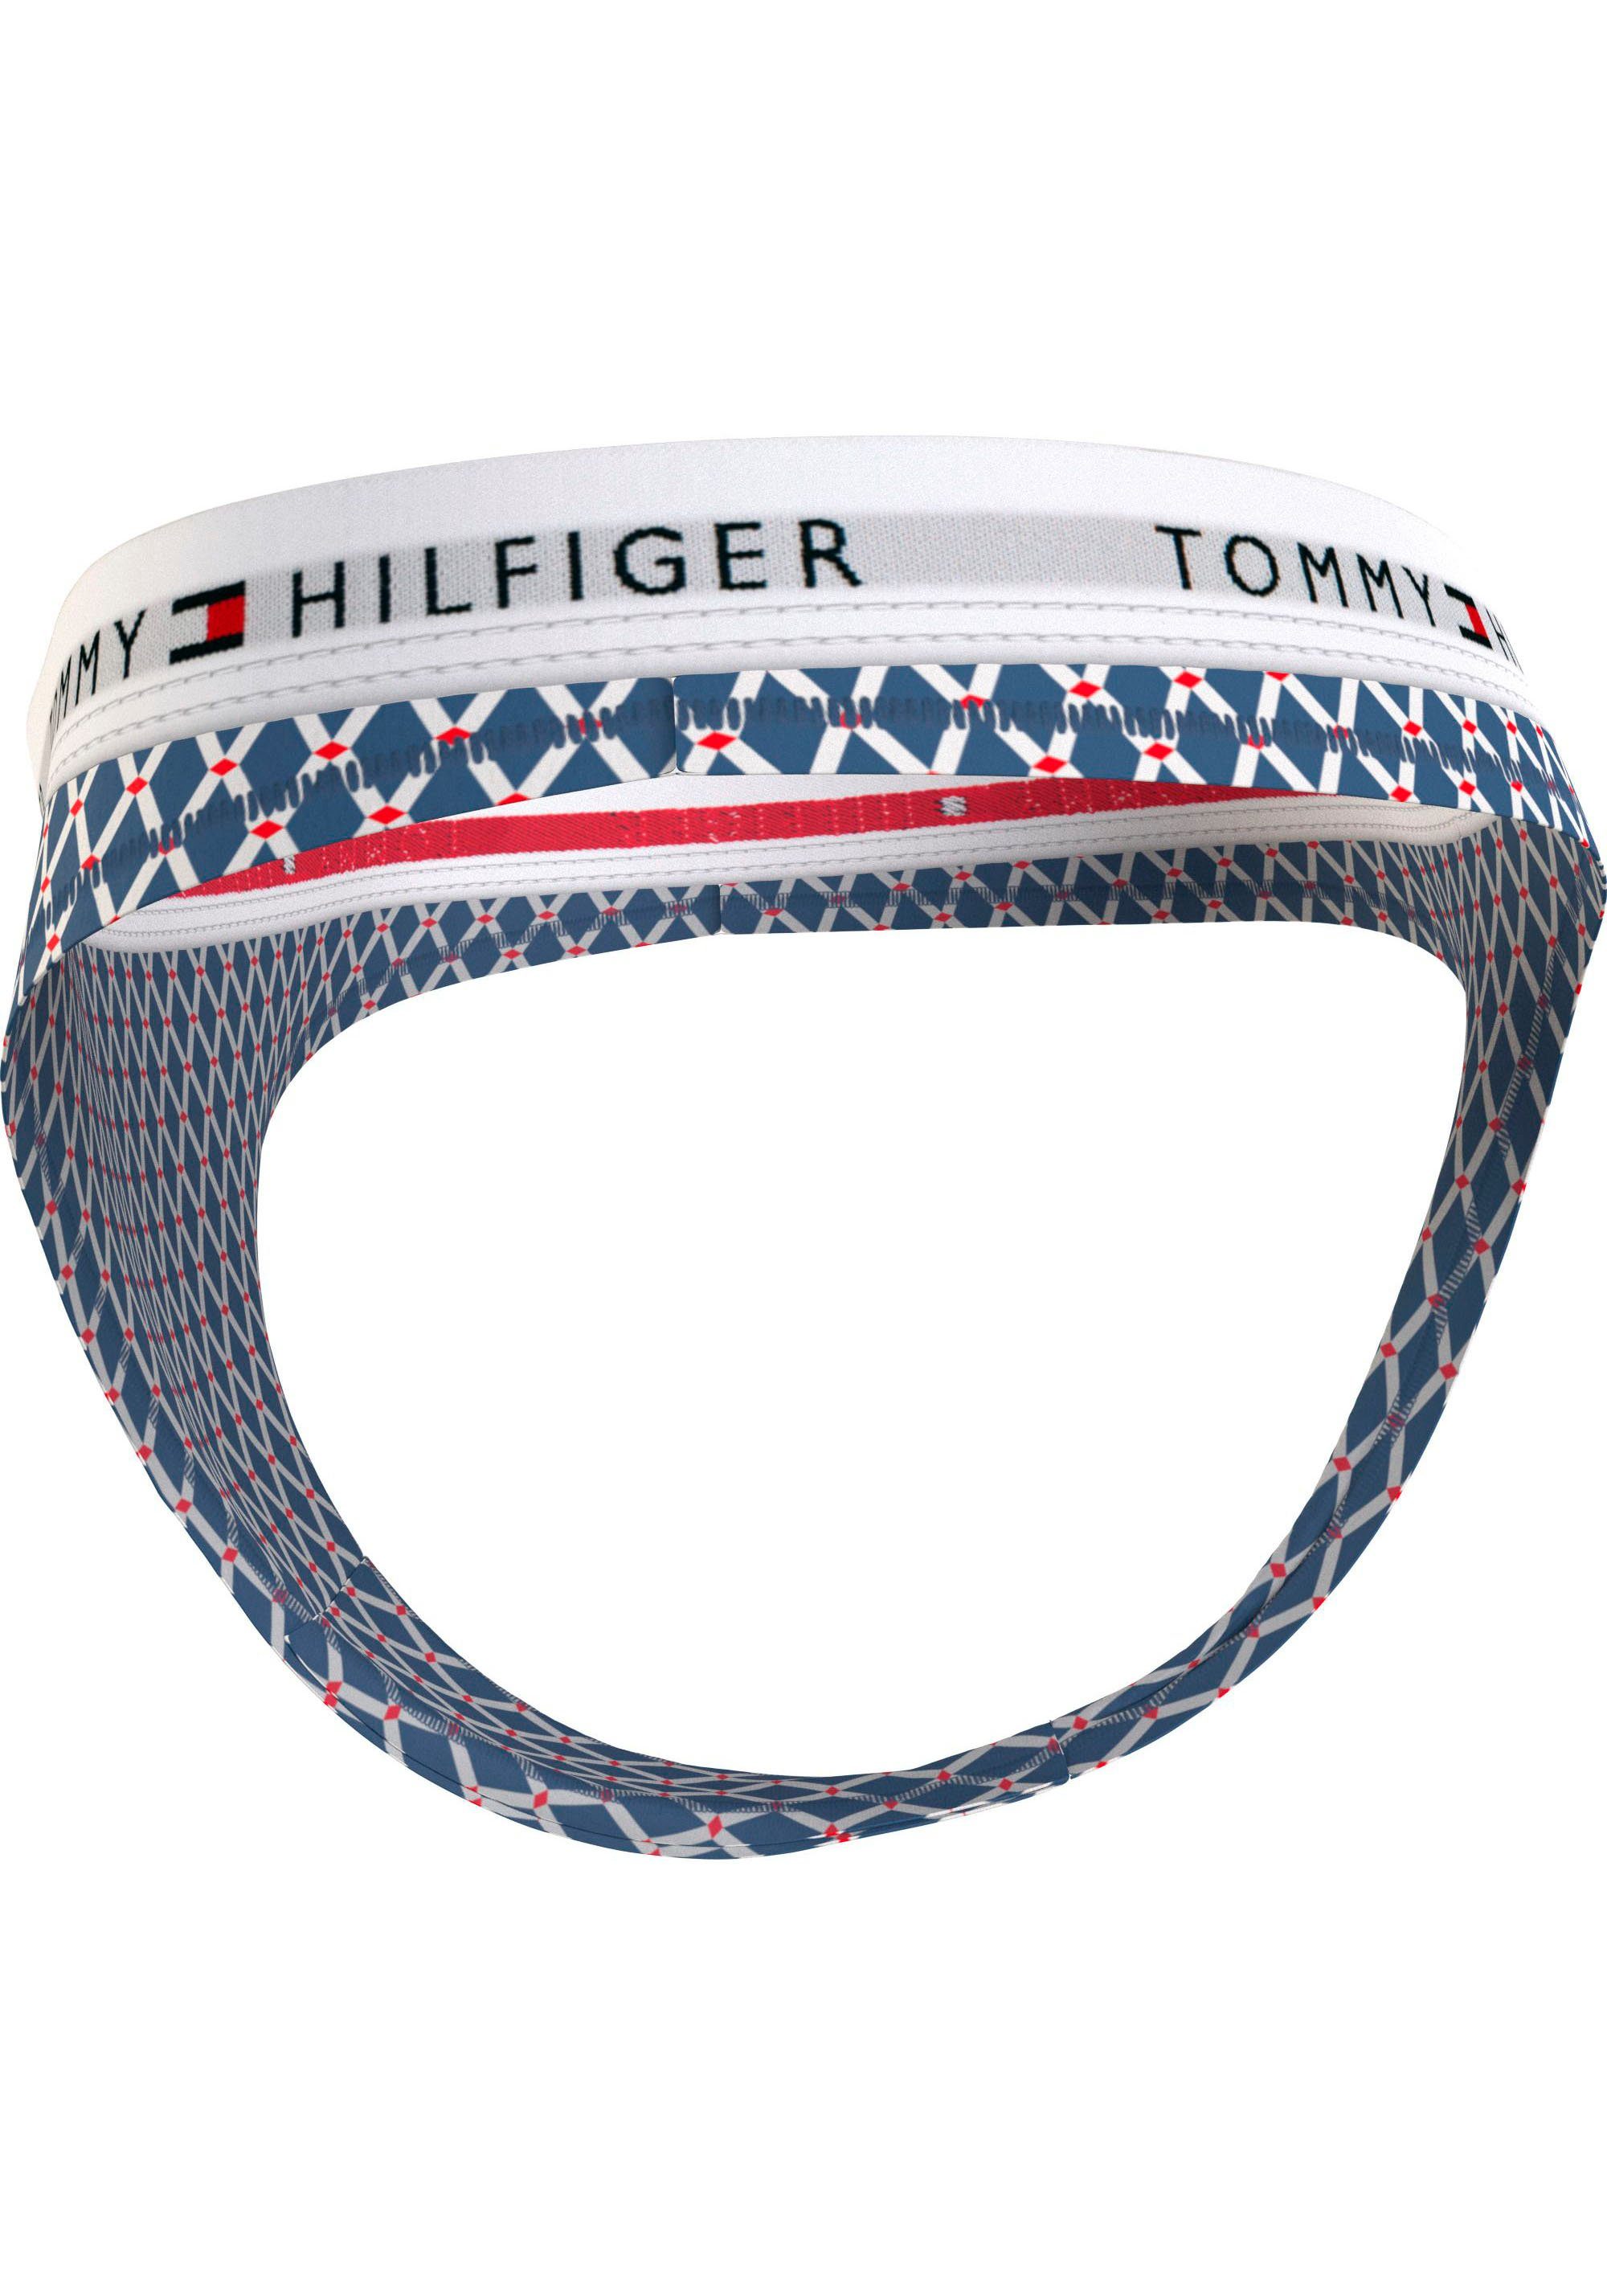 Tommy Hilfiger Underwear T-String Logoschriftzug PRINT blau THONG bedr mit